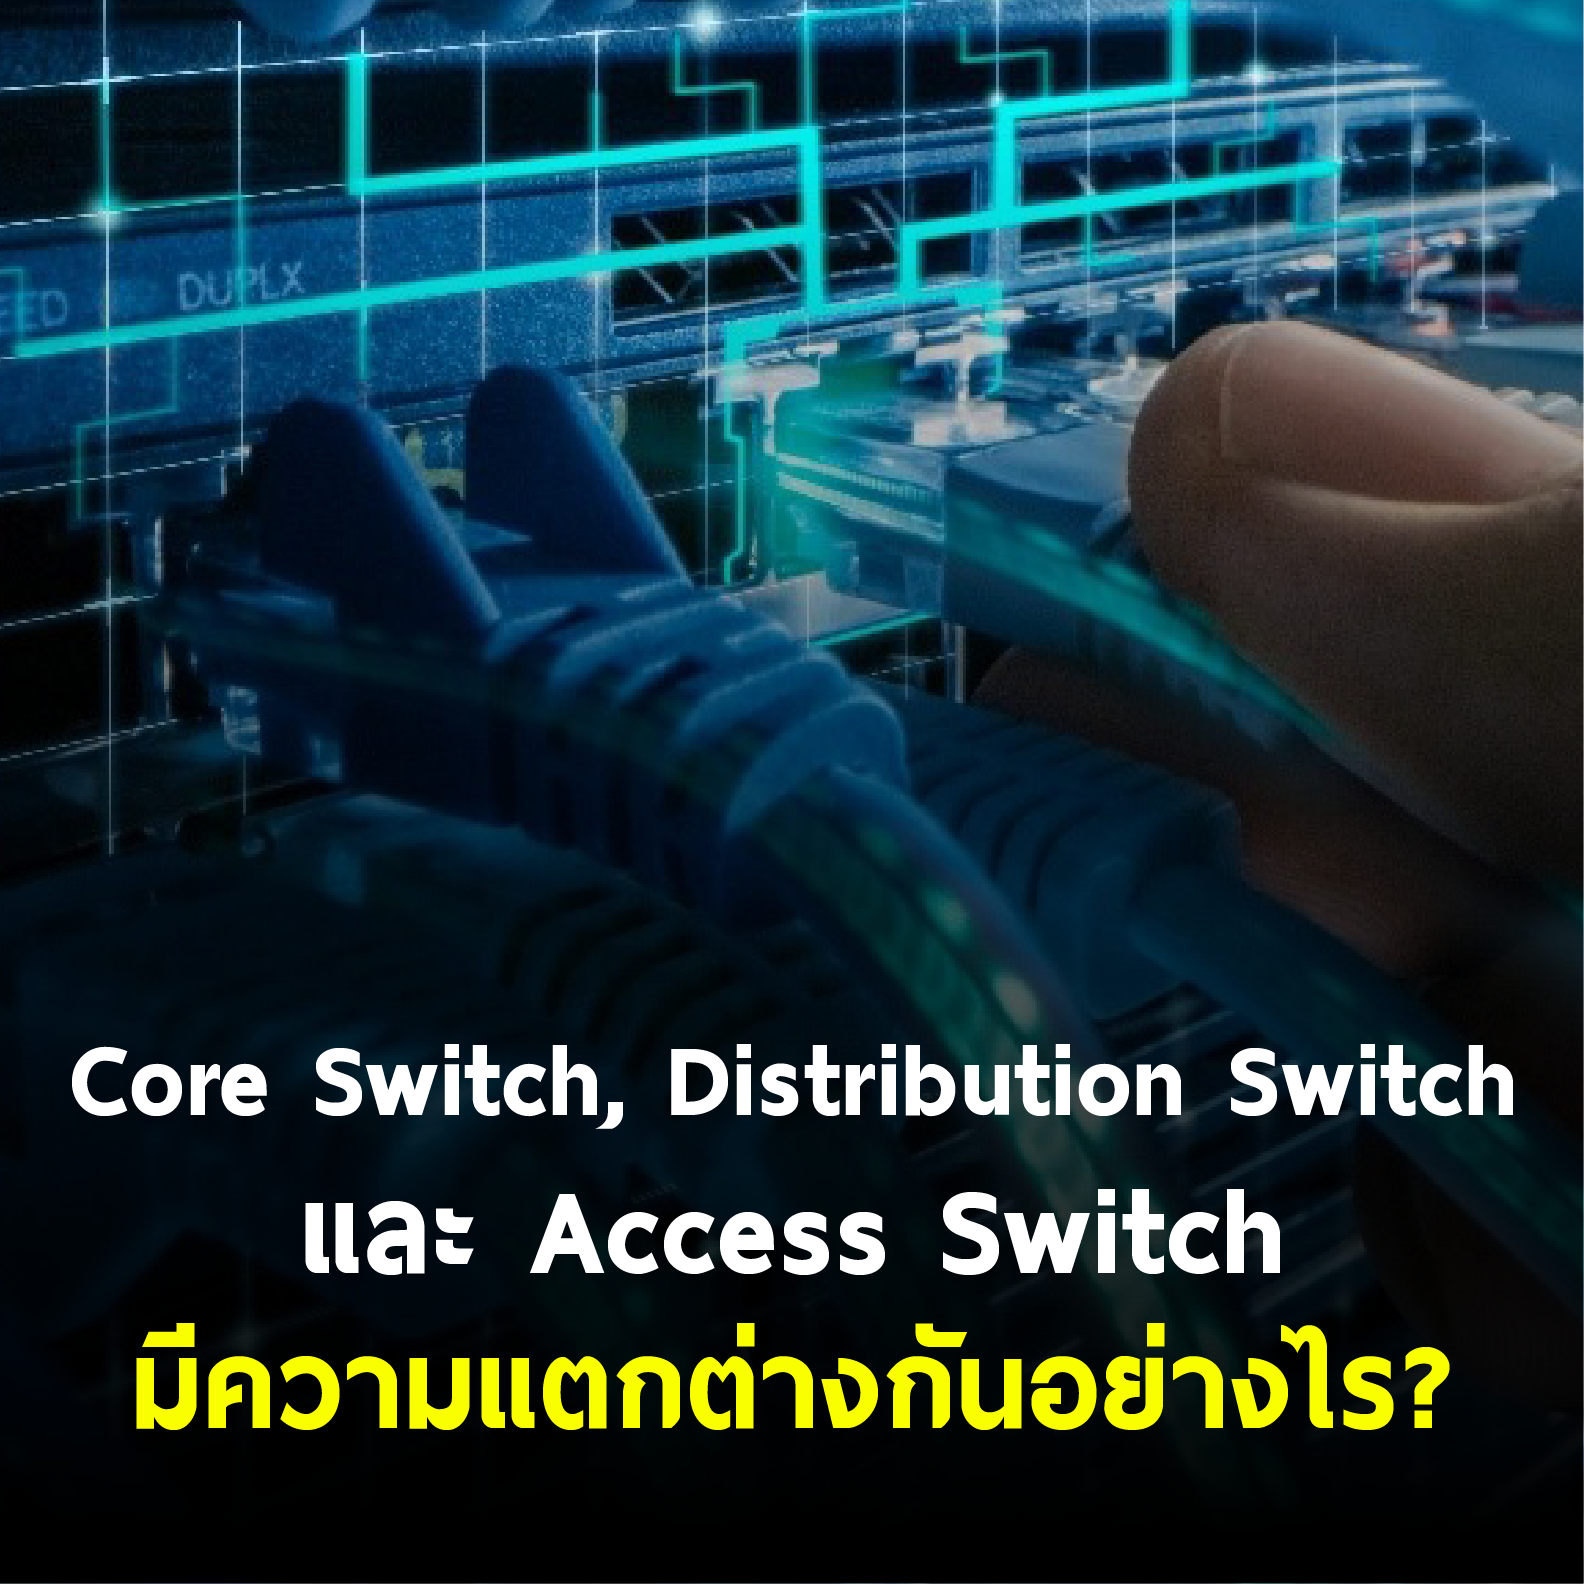 Core Switch, Distribution Switch และ Access Switch มีความแตกต่างกันอย่างไร?